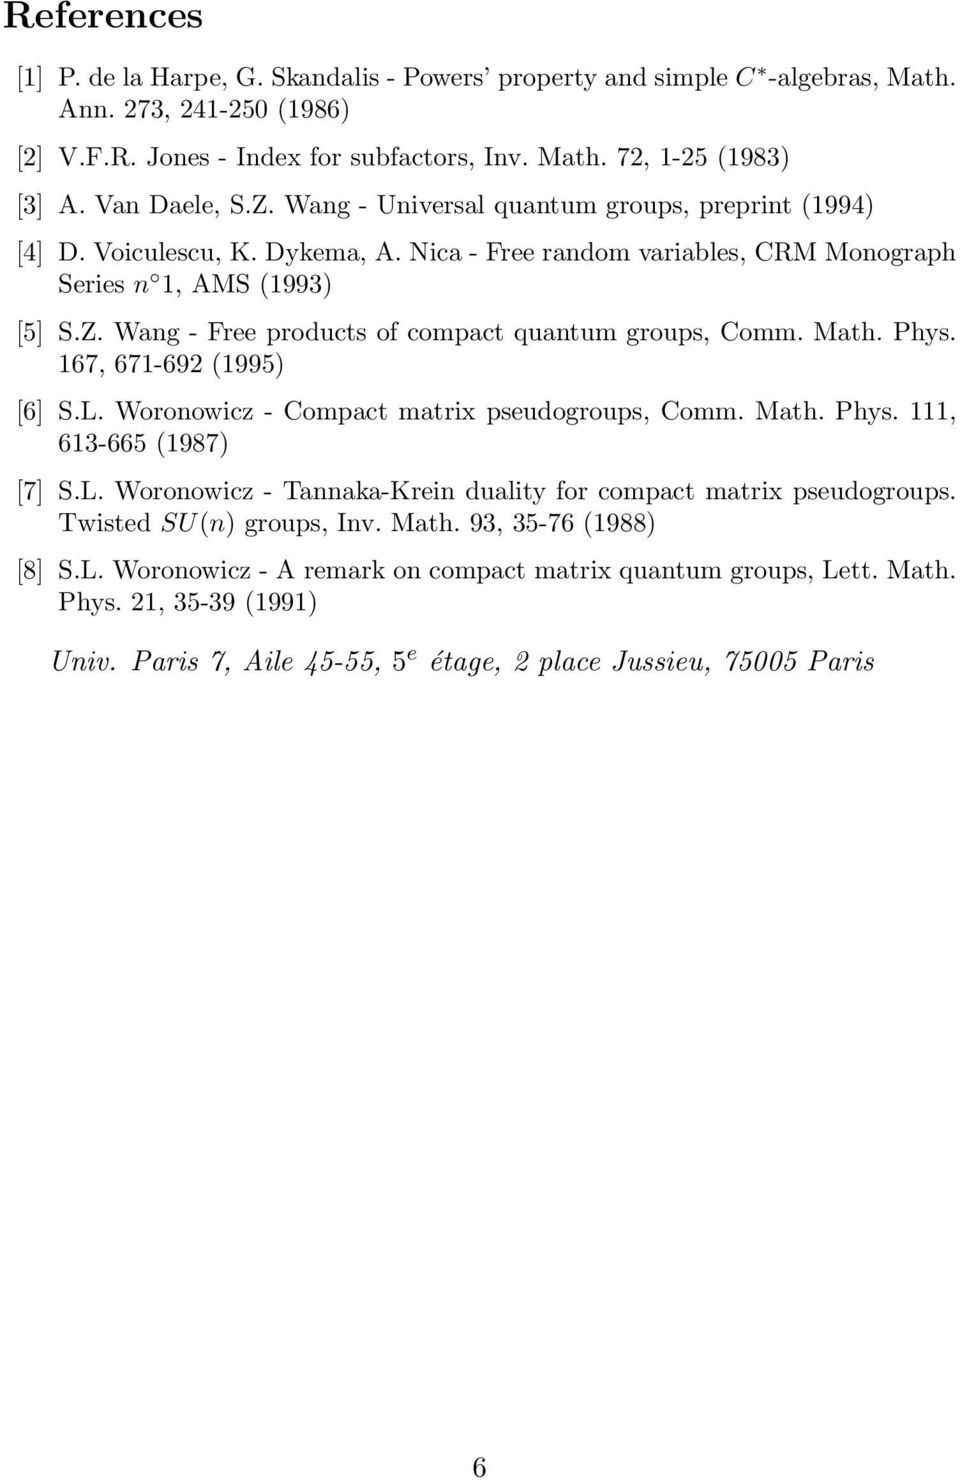 Math. Phys. 167, 671-692 (1995) [6] S.L. Woronowicz - Compact matrix pseudogroups, Comm. Math. Phys. 111, 613-665 (1987) [7] S.L. Woronowicz - Tannaka-Krein duality for compact matrix pseudogroups.